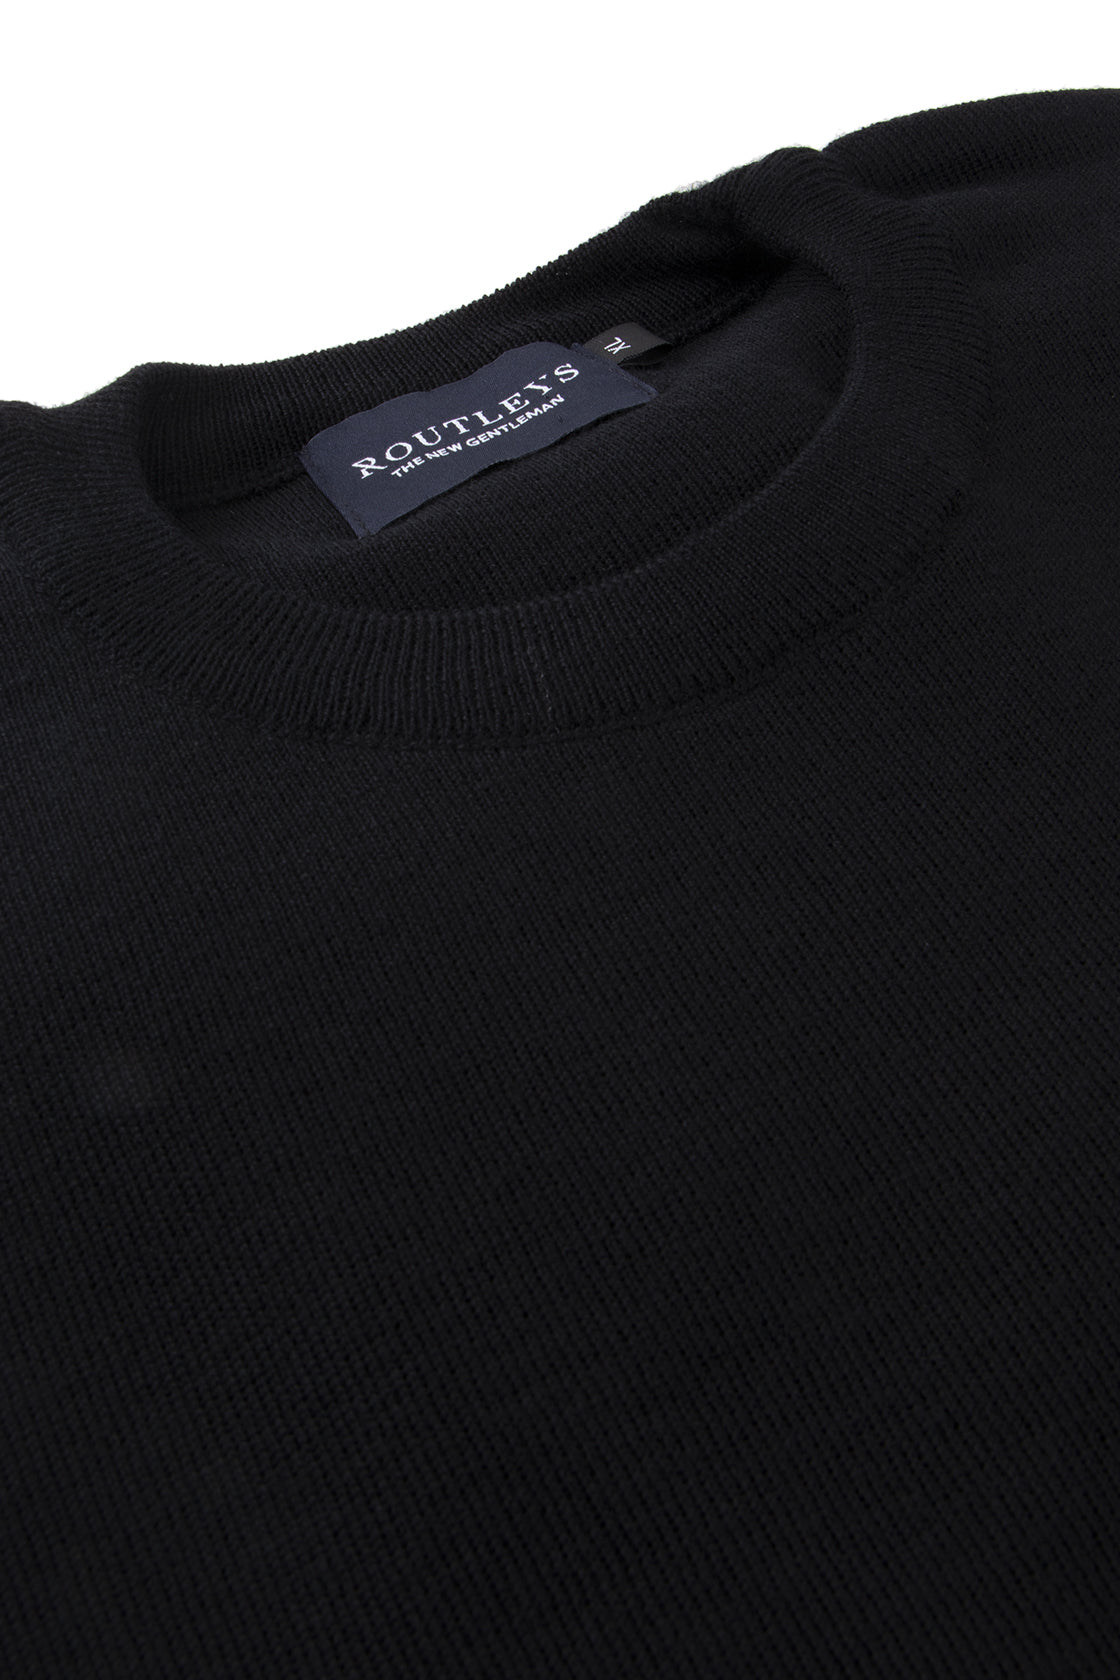 Routleys Merino Crew Neck Sweater Black